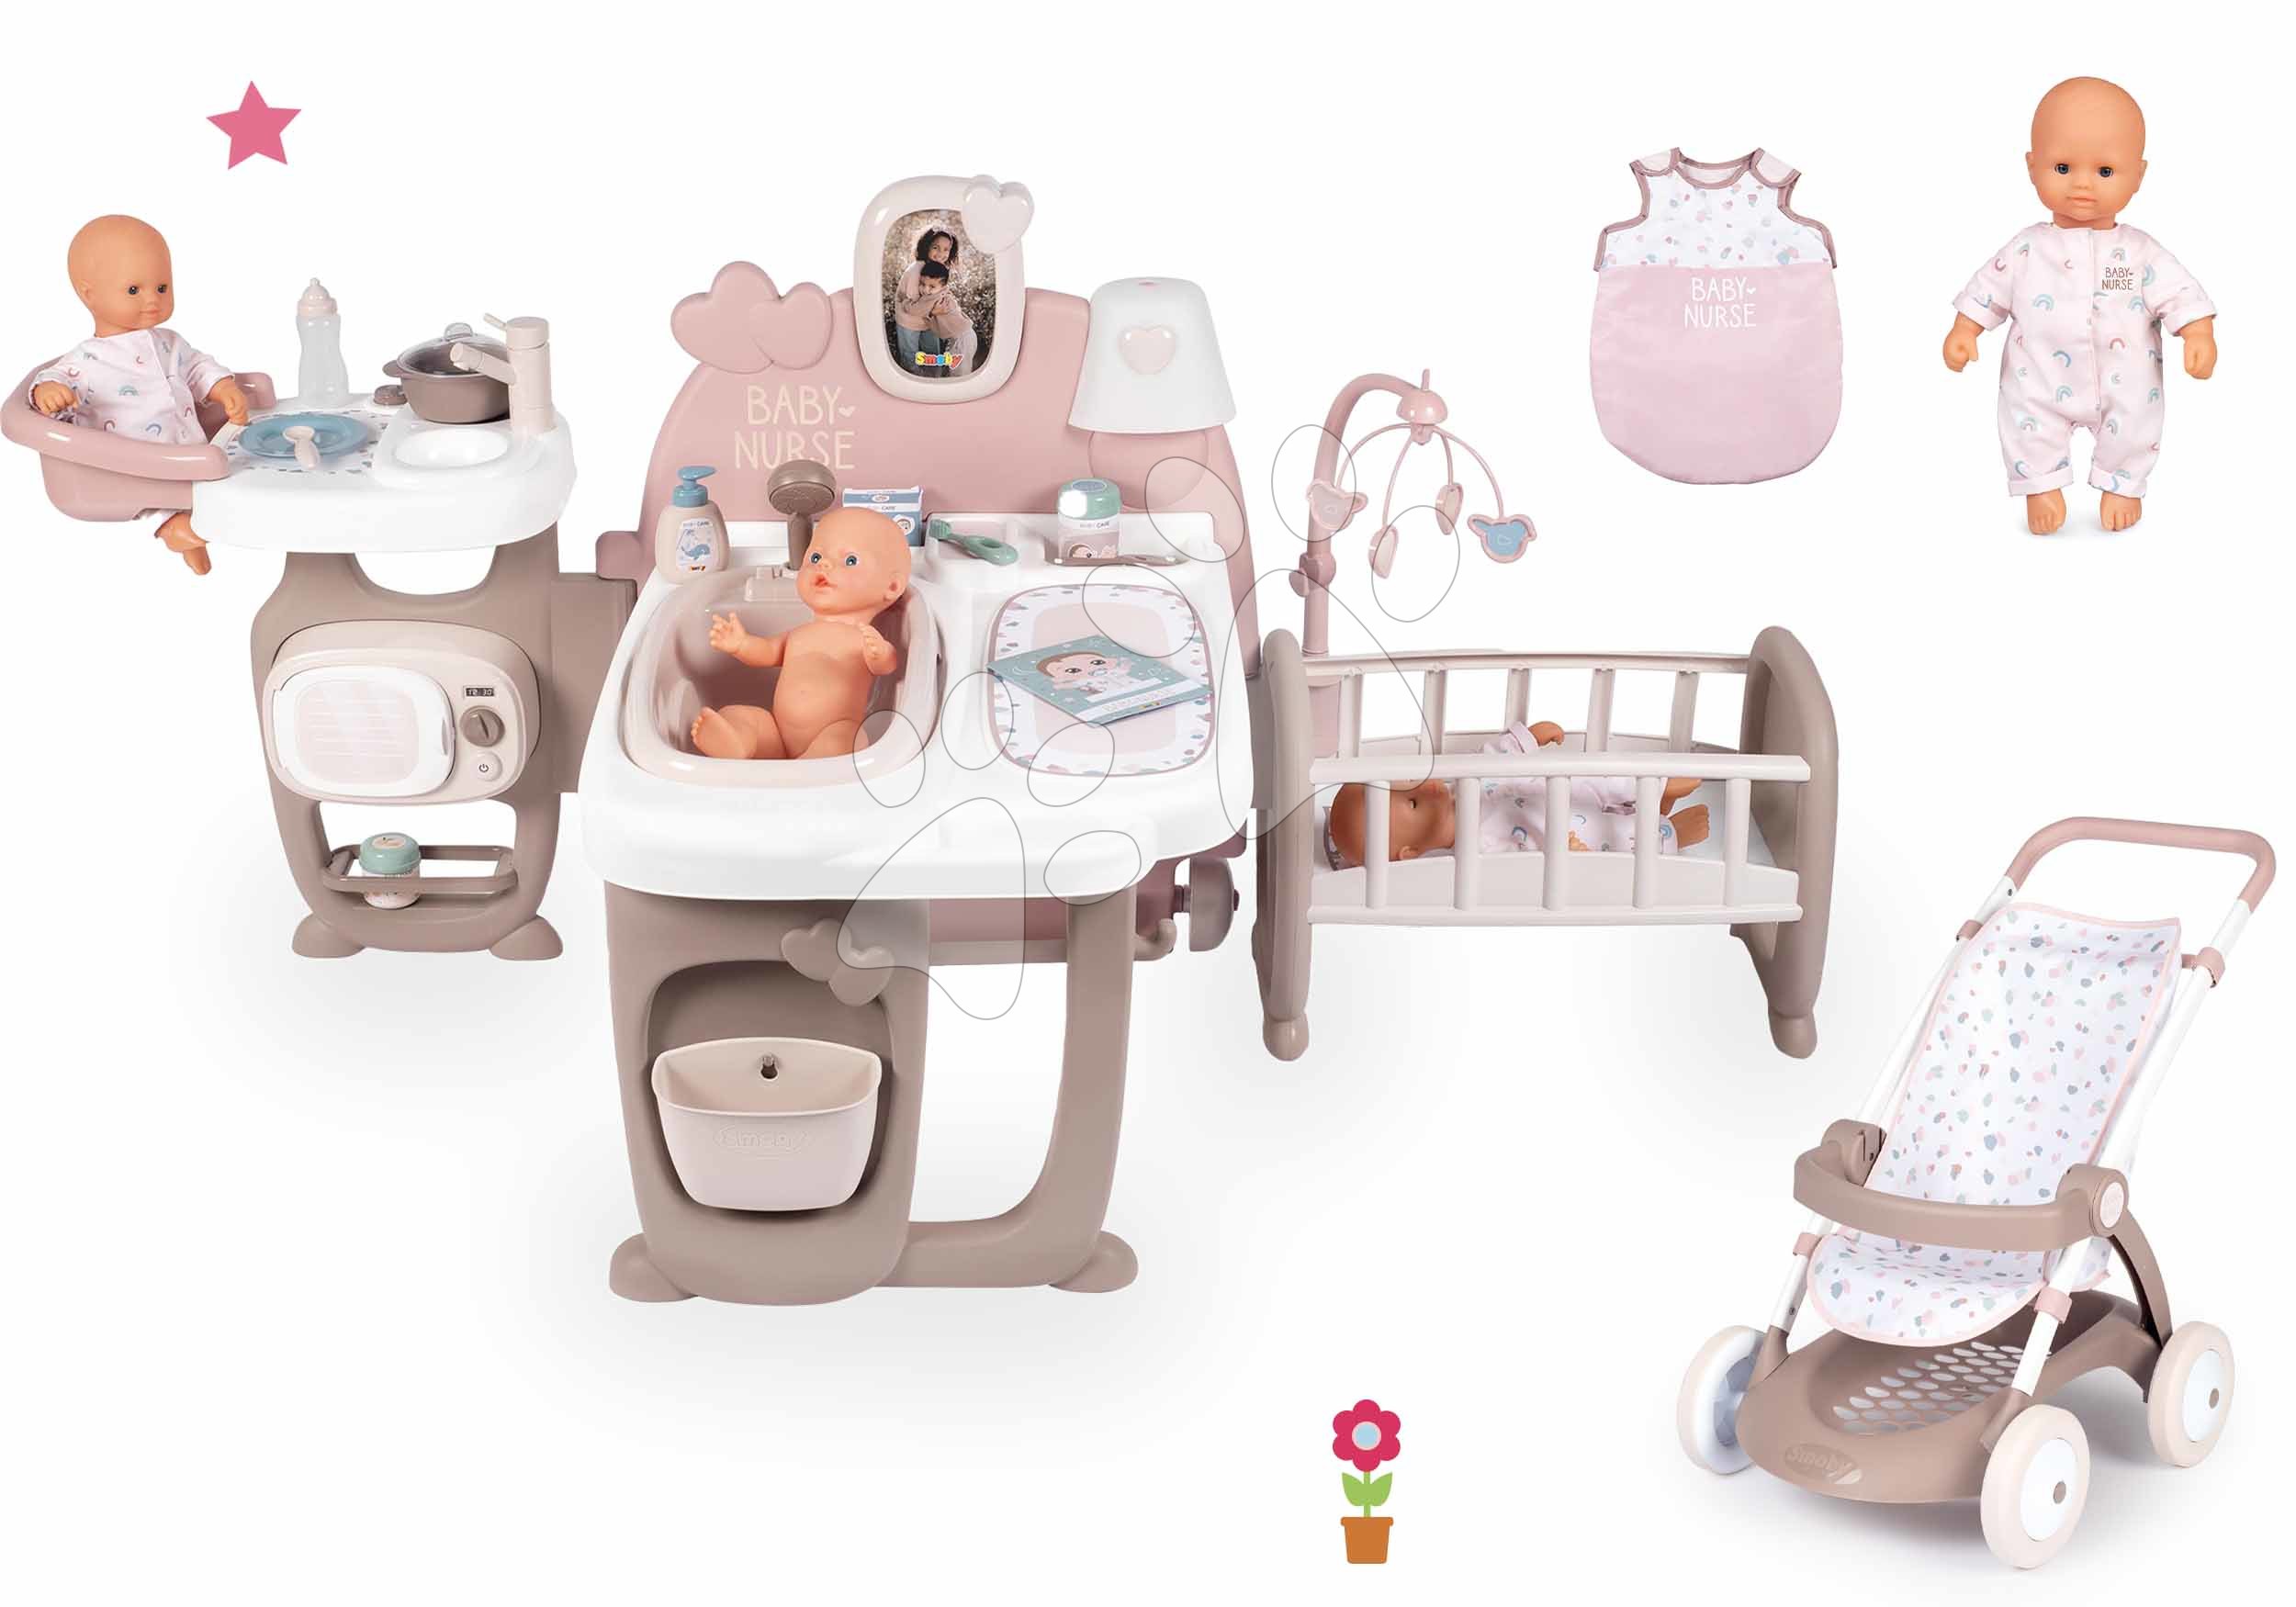 Kućice za lutke setovi - Set kućica za lutku Large Doll's Play Center Natur D'Amour Baby Nurse Smoby i sportska kolica s vrećom za spavanje i lutkom veličine 32 cm